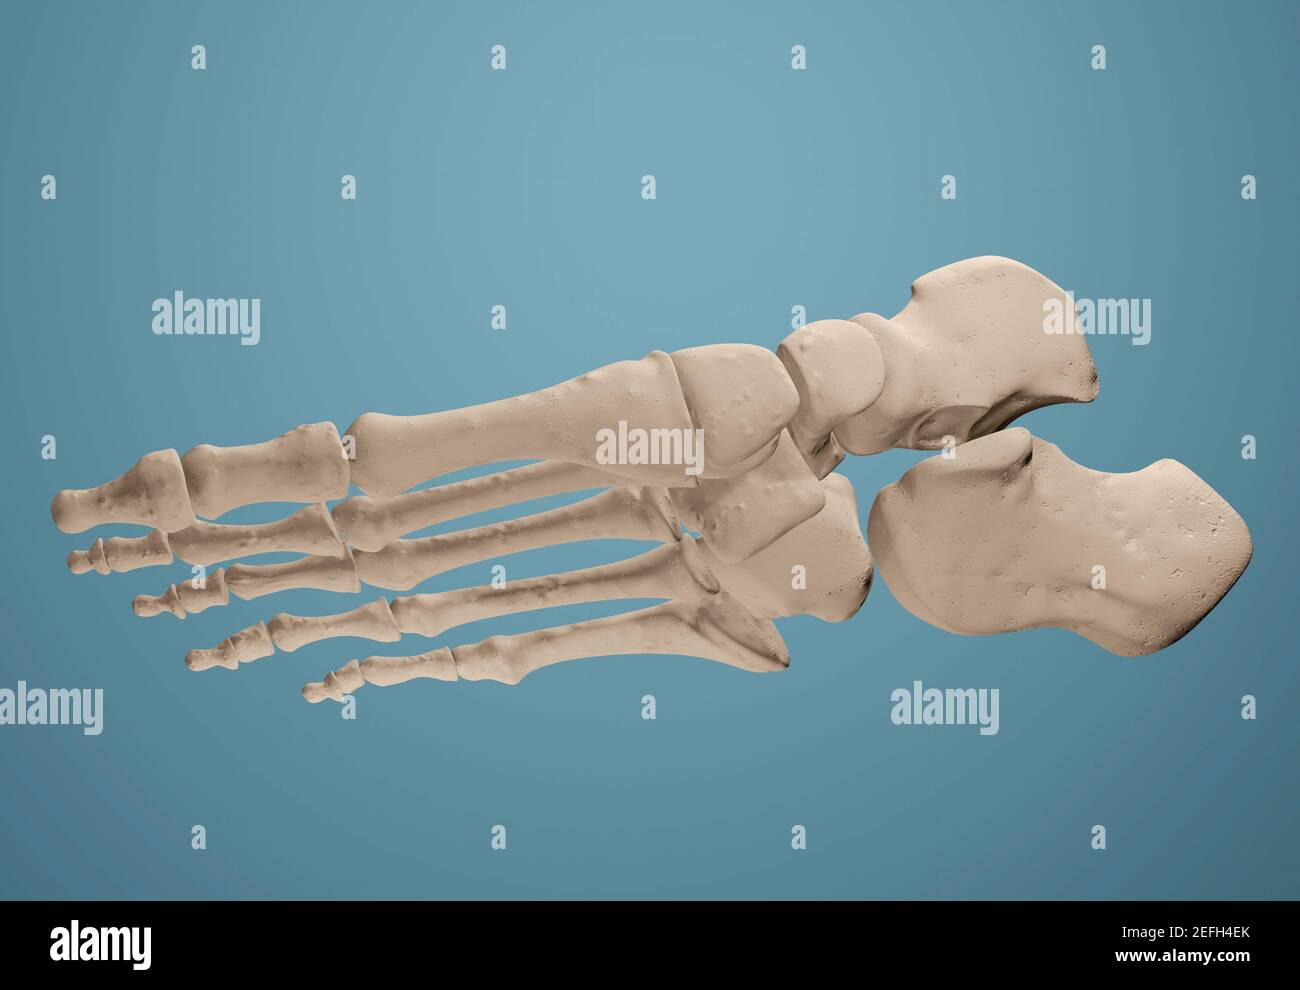 3D render showing bones of the foot. Stock Photo